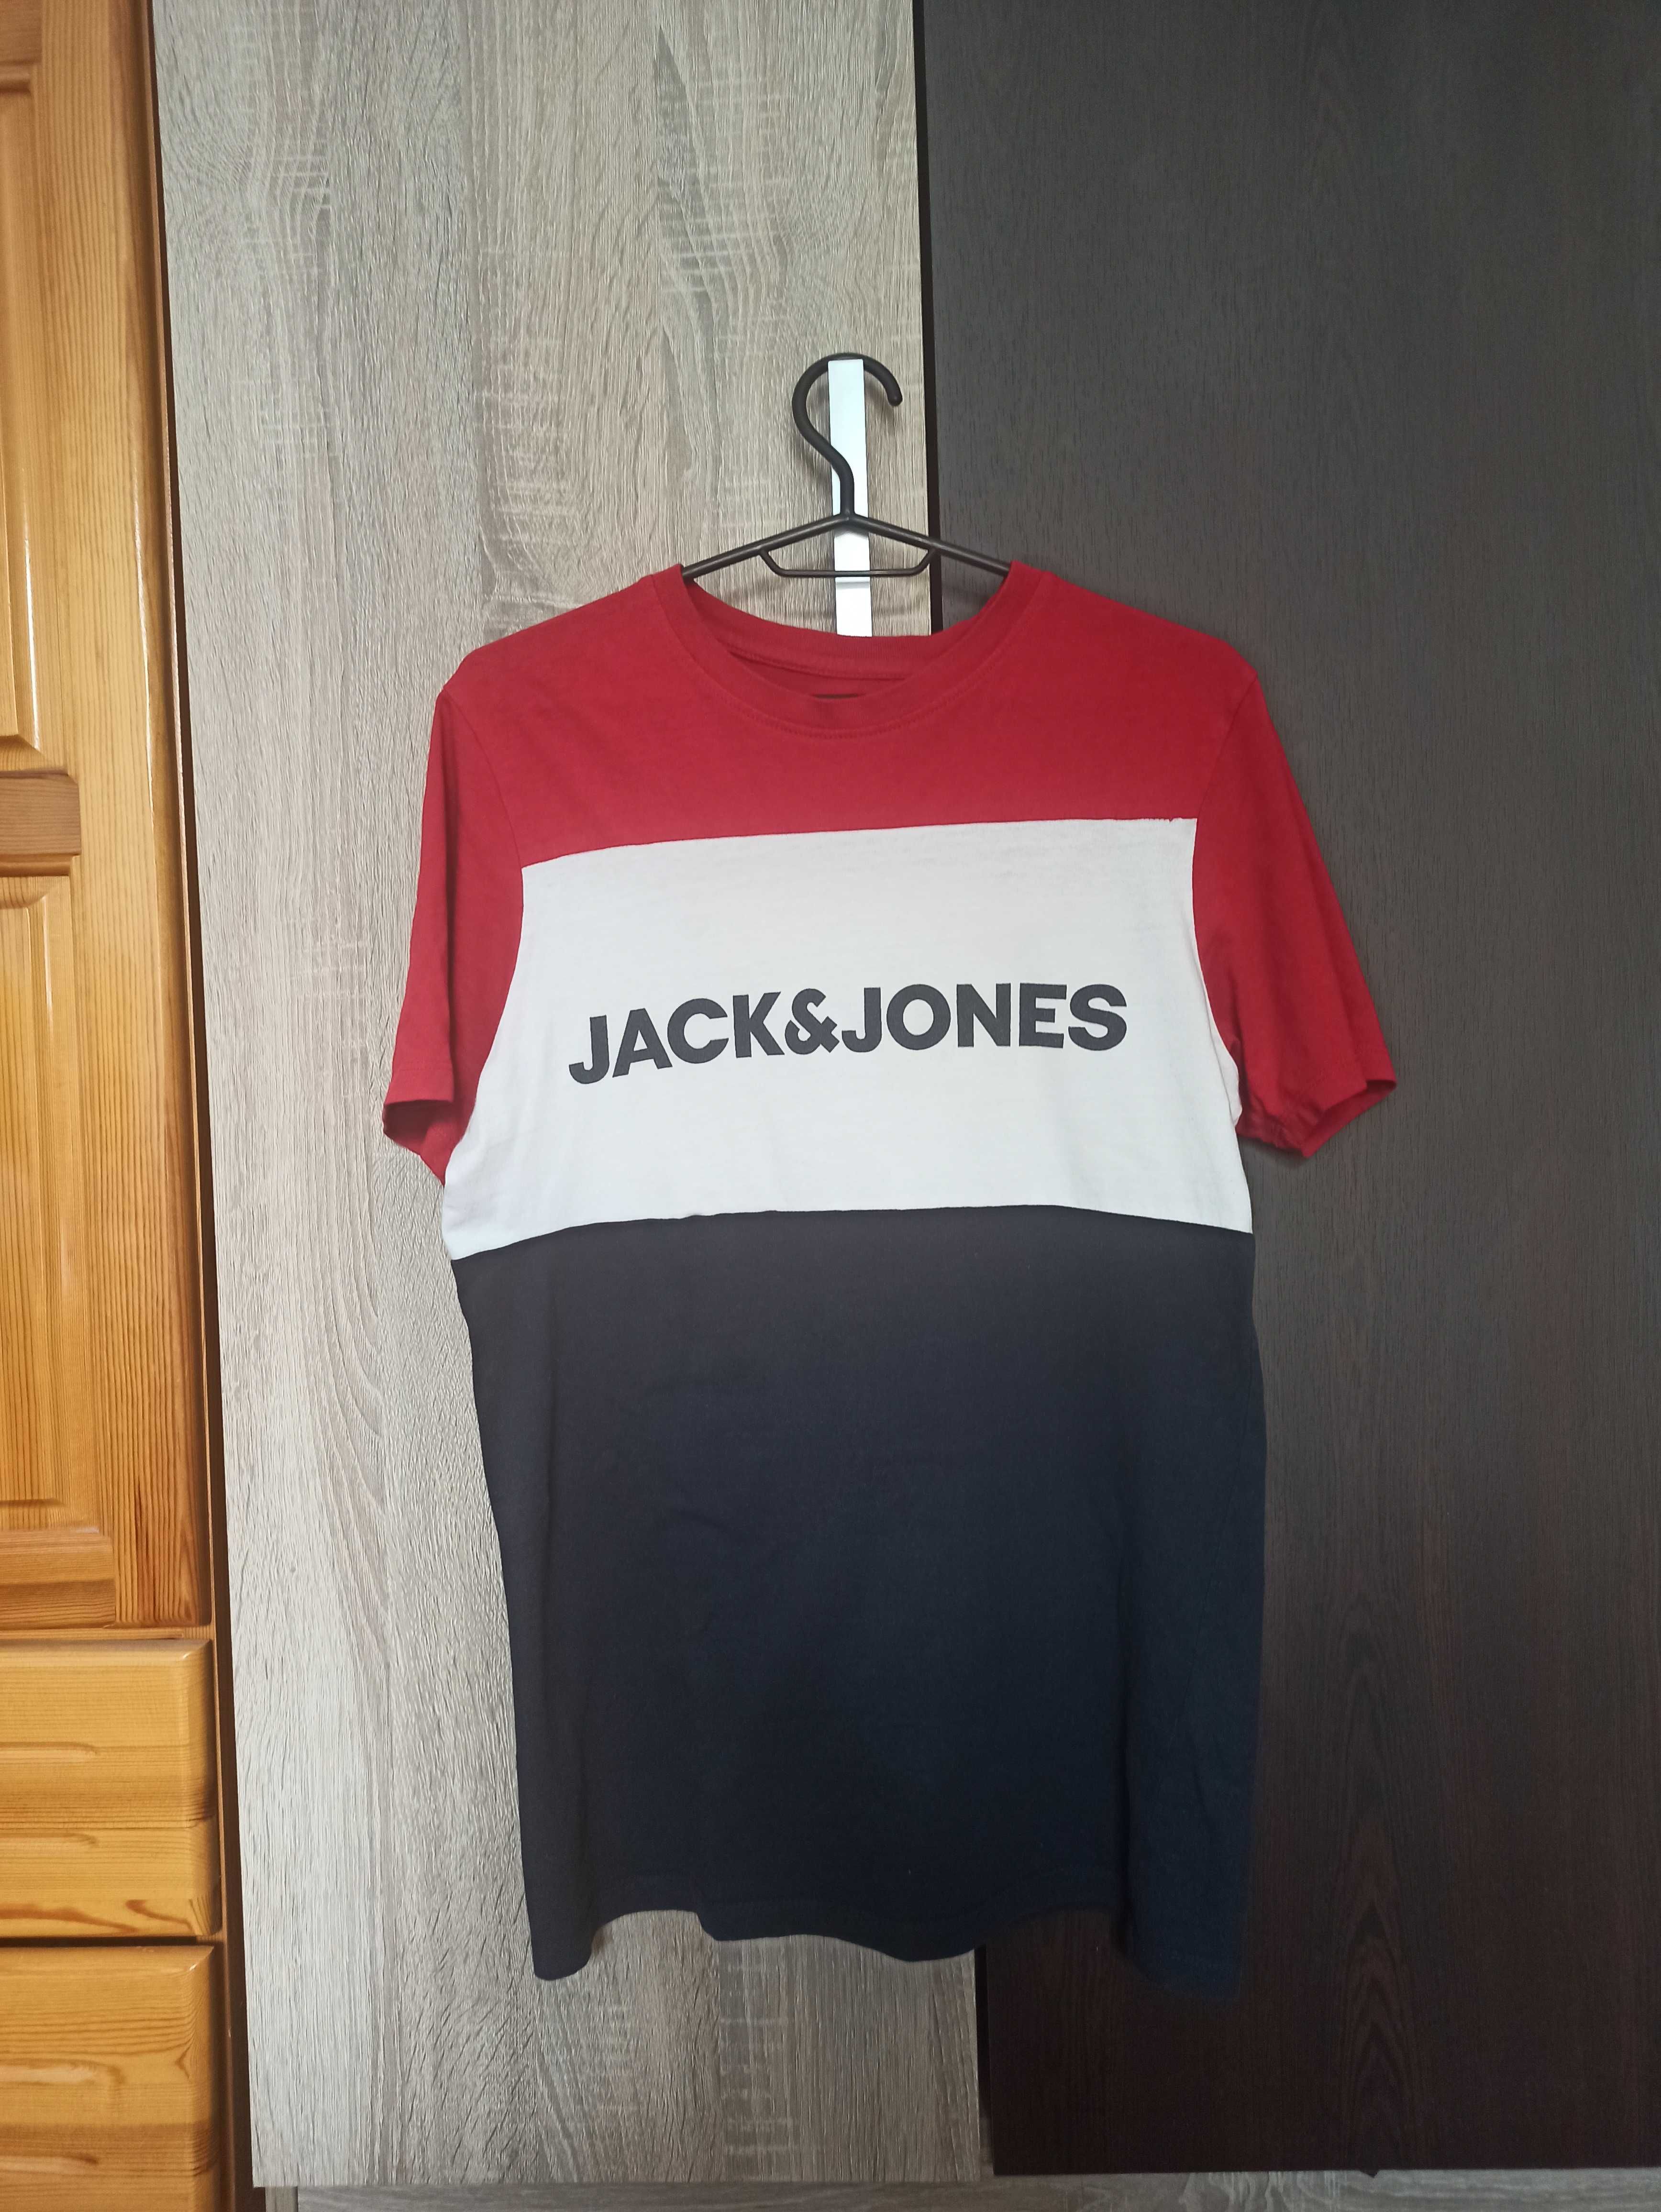 Мъжка тениска  Jack and Jones, размер S, цветна